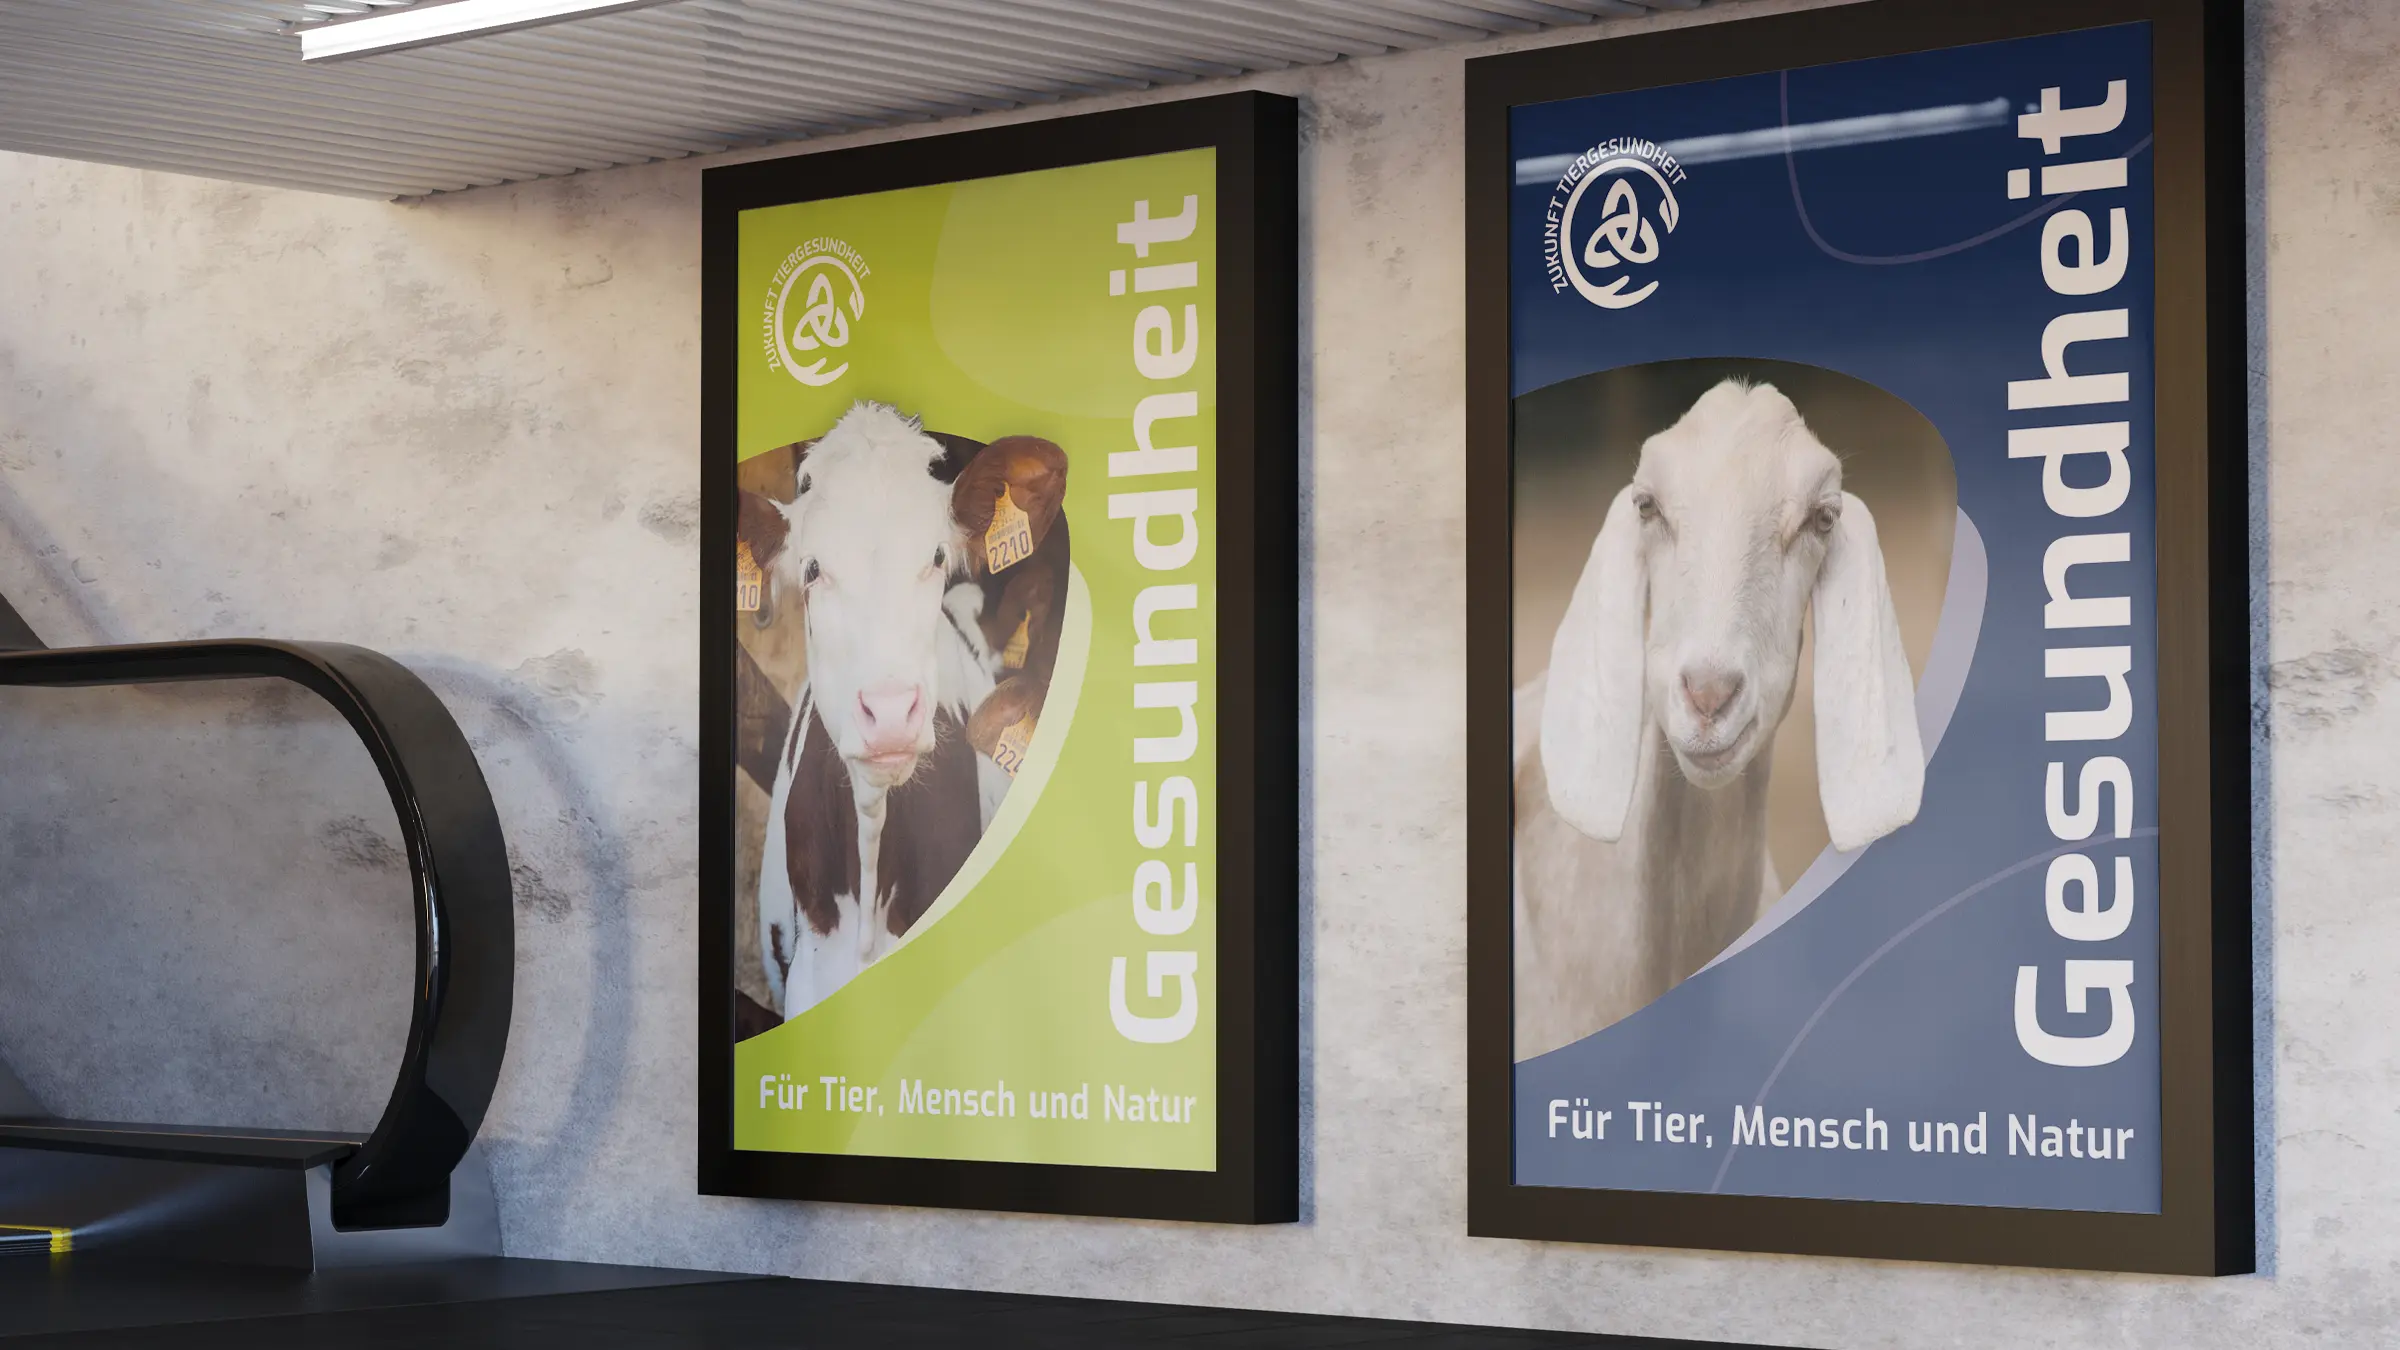 U-Bahn-Banner, die Gesundheit für Tier, Mensch und Natur und damit den Verein Zukunft Tiergesundheit e.V. bewerben